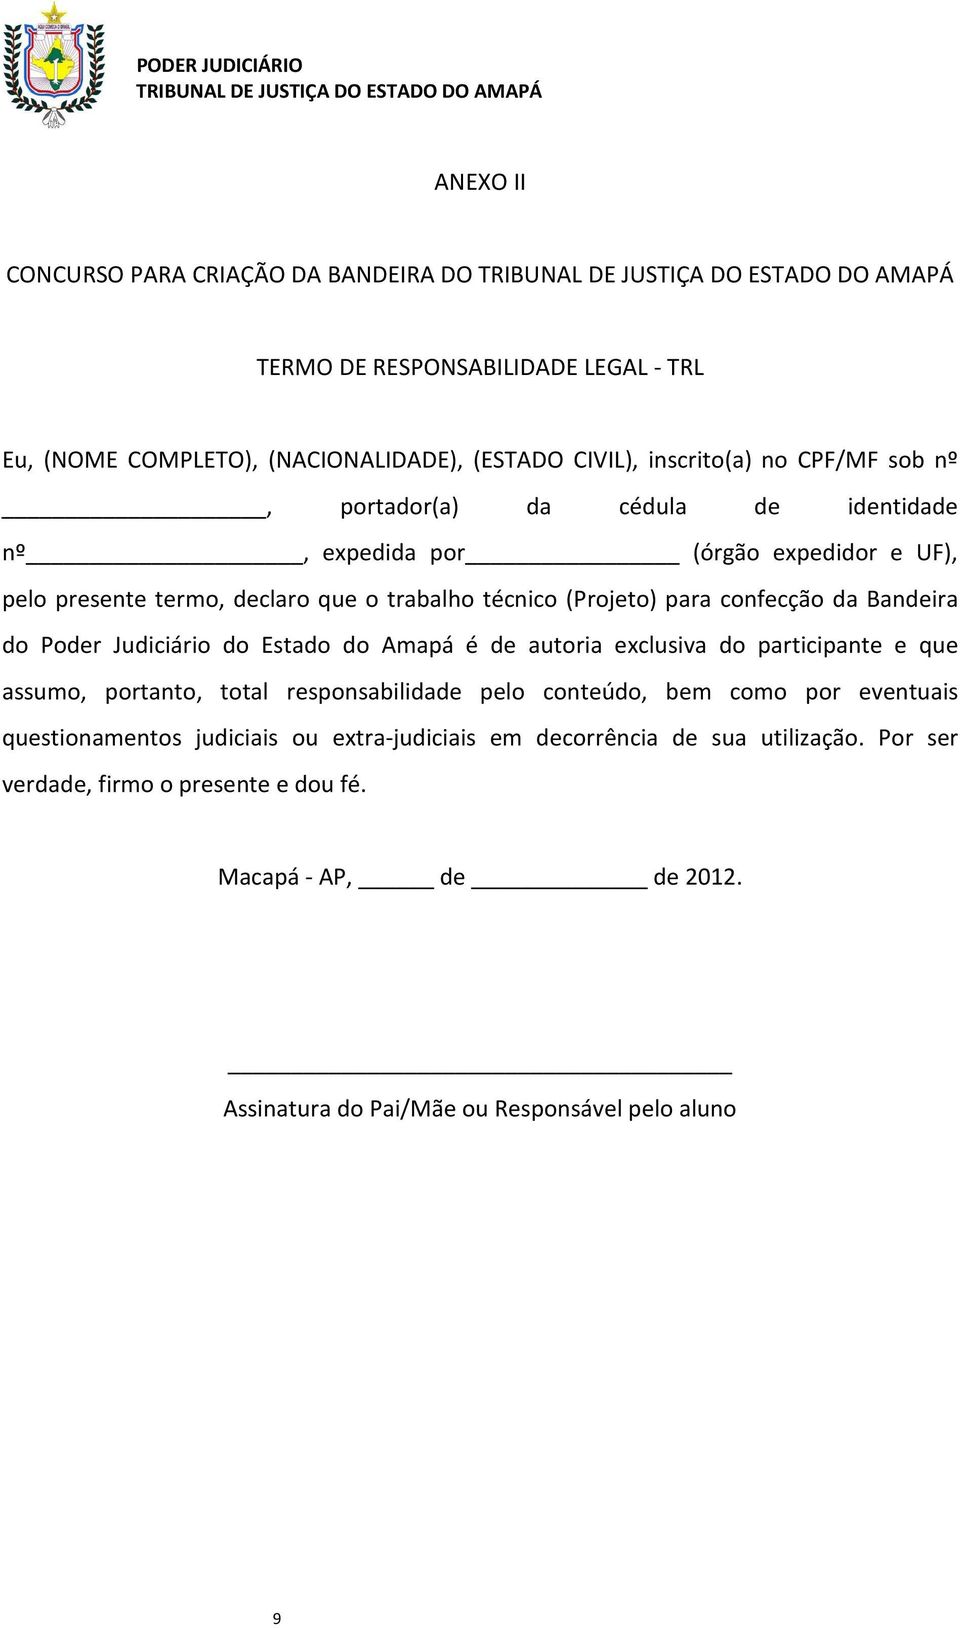 Poder Judiciário do Estado do Amapá é de autoria exclusiva do participante e que assumo, portanto, total responsabilidade pelo conteúdo, bem como por eventuais